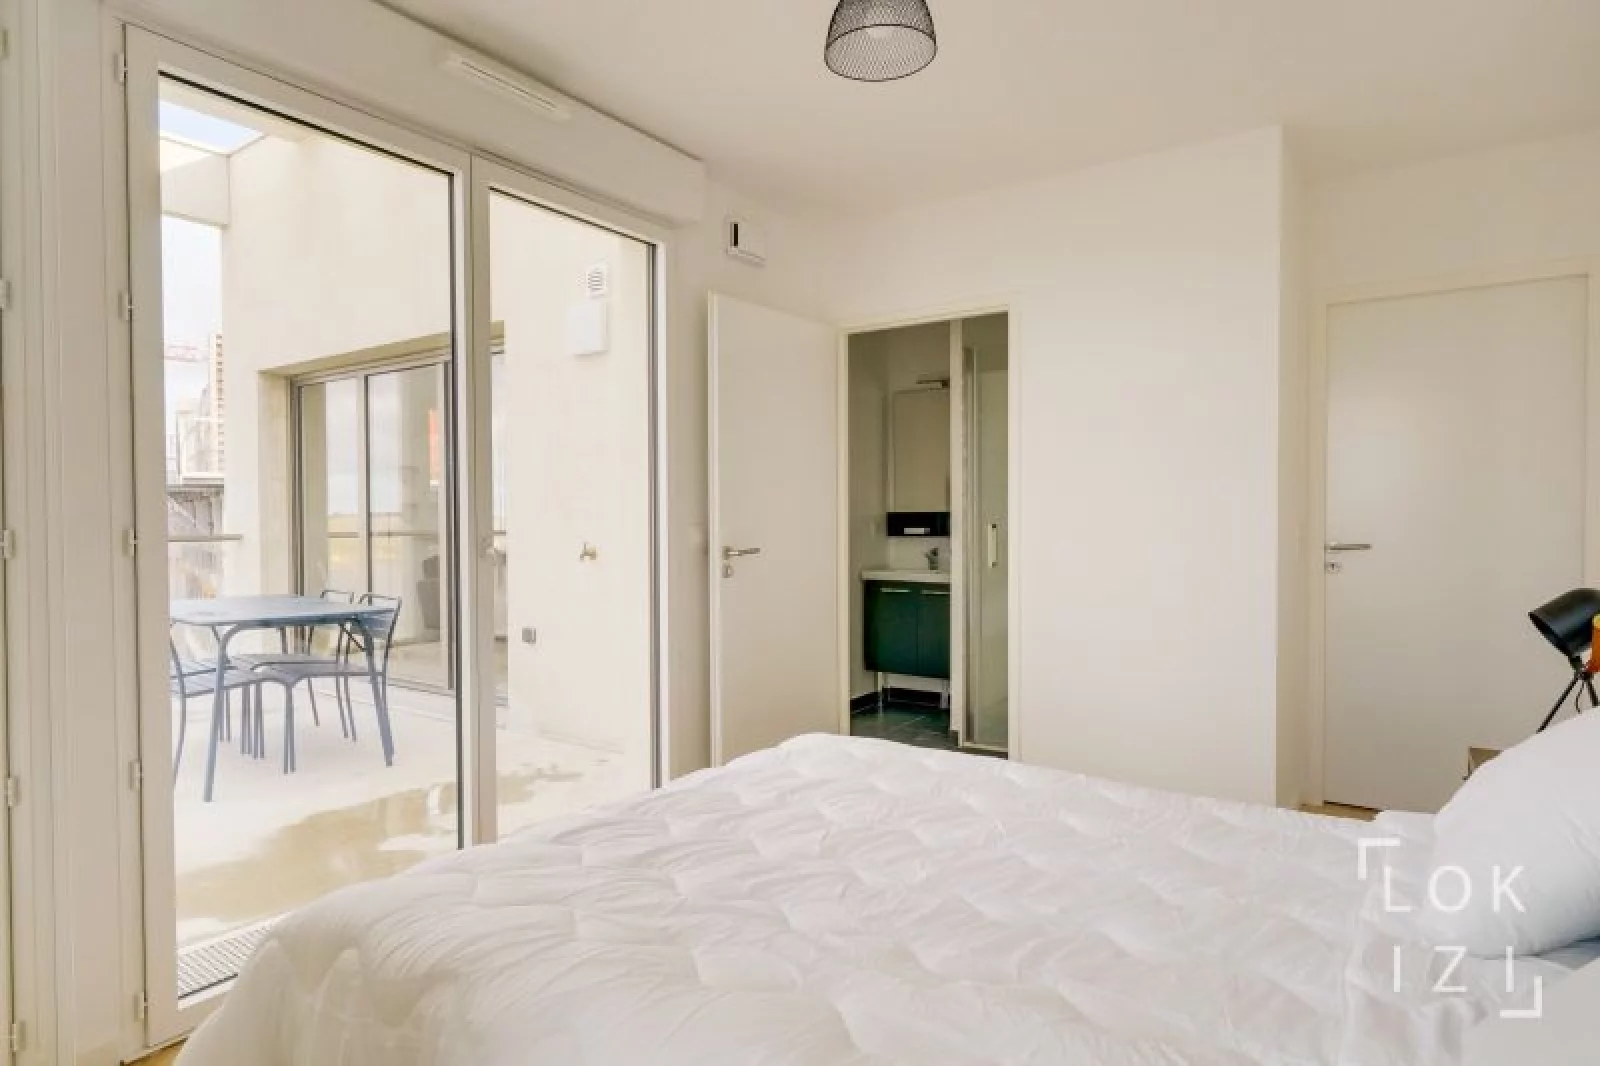 Location appartement T4 meublé de 83m² (Bordeaux - La Bastide)